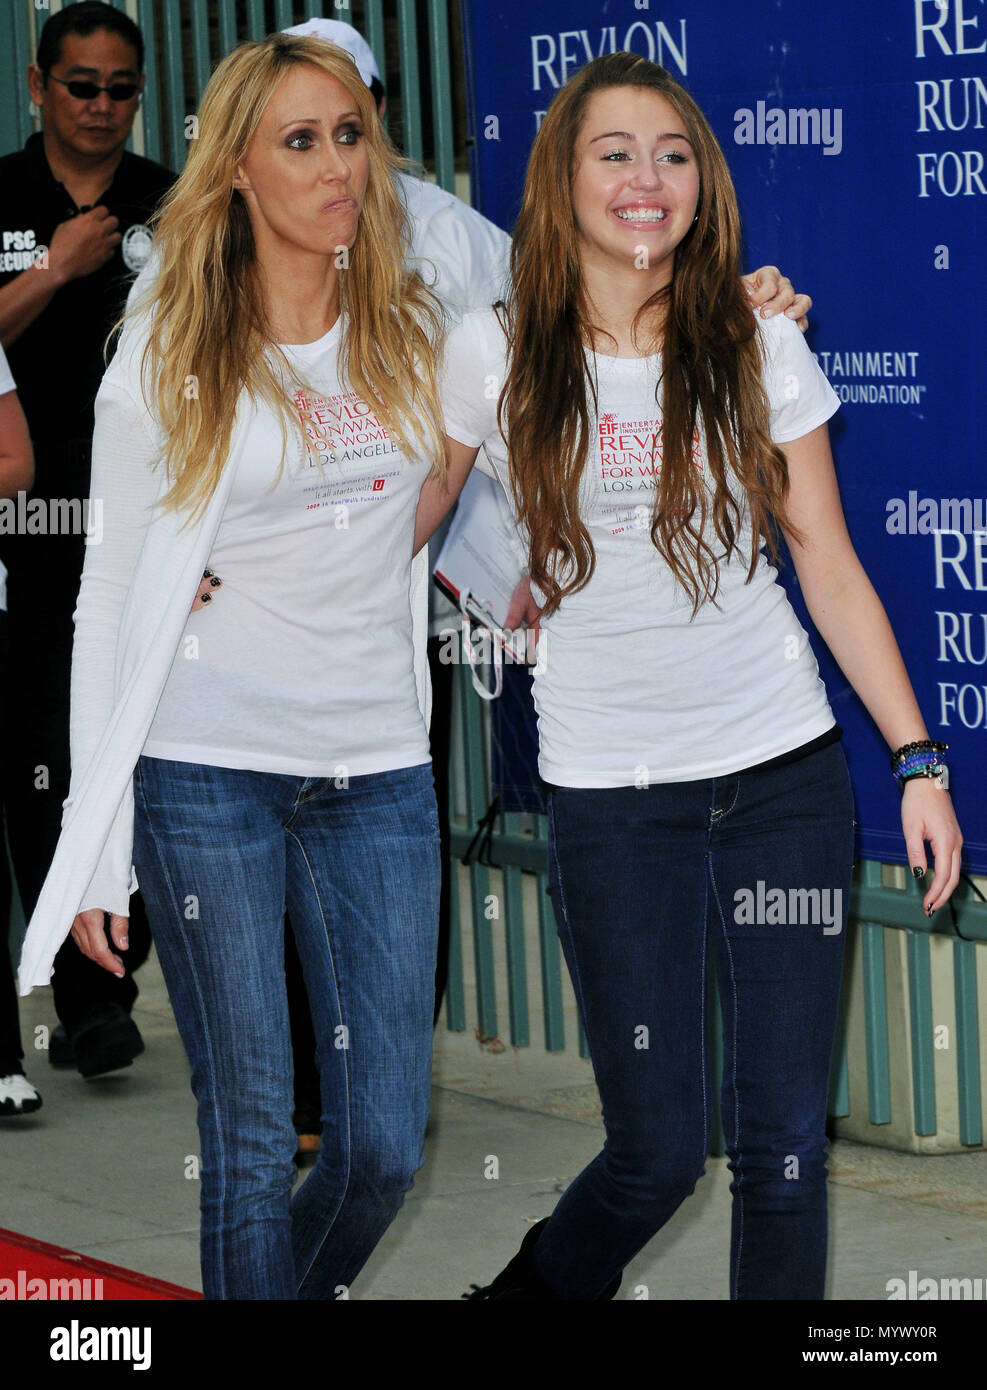 Trish avec Cyrus Miley Cyrus fille - Revlon Run / Marche pour les femmes de  bénéficier le FEI au Los Angeles Memorial Coliseum. 23 CyrusMiley Trish  événement dans la vie d'Hollywood, Californie -